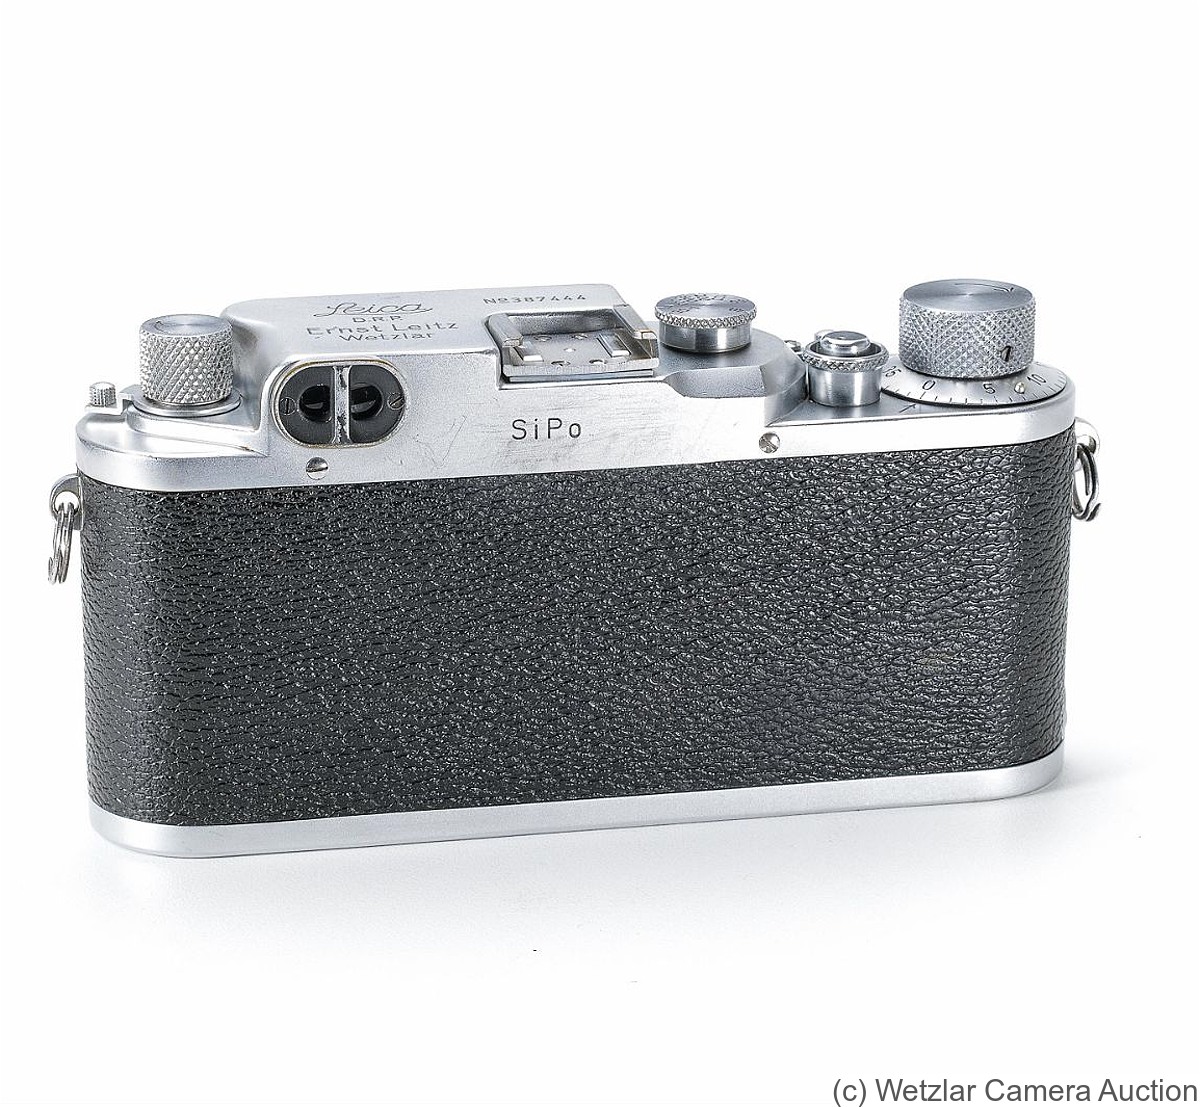 Leitz: Leica IIIc 'SiPo' camera